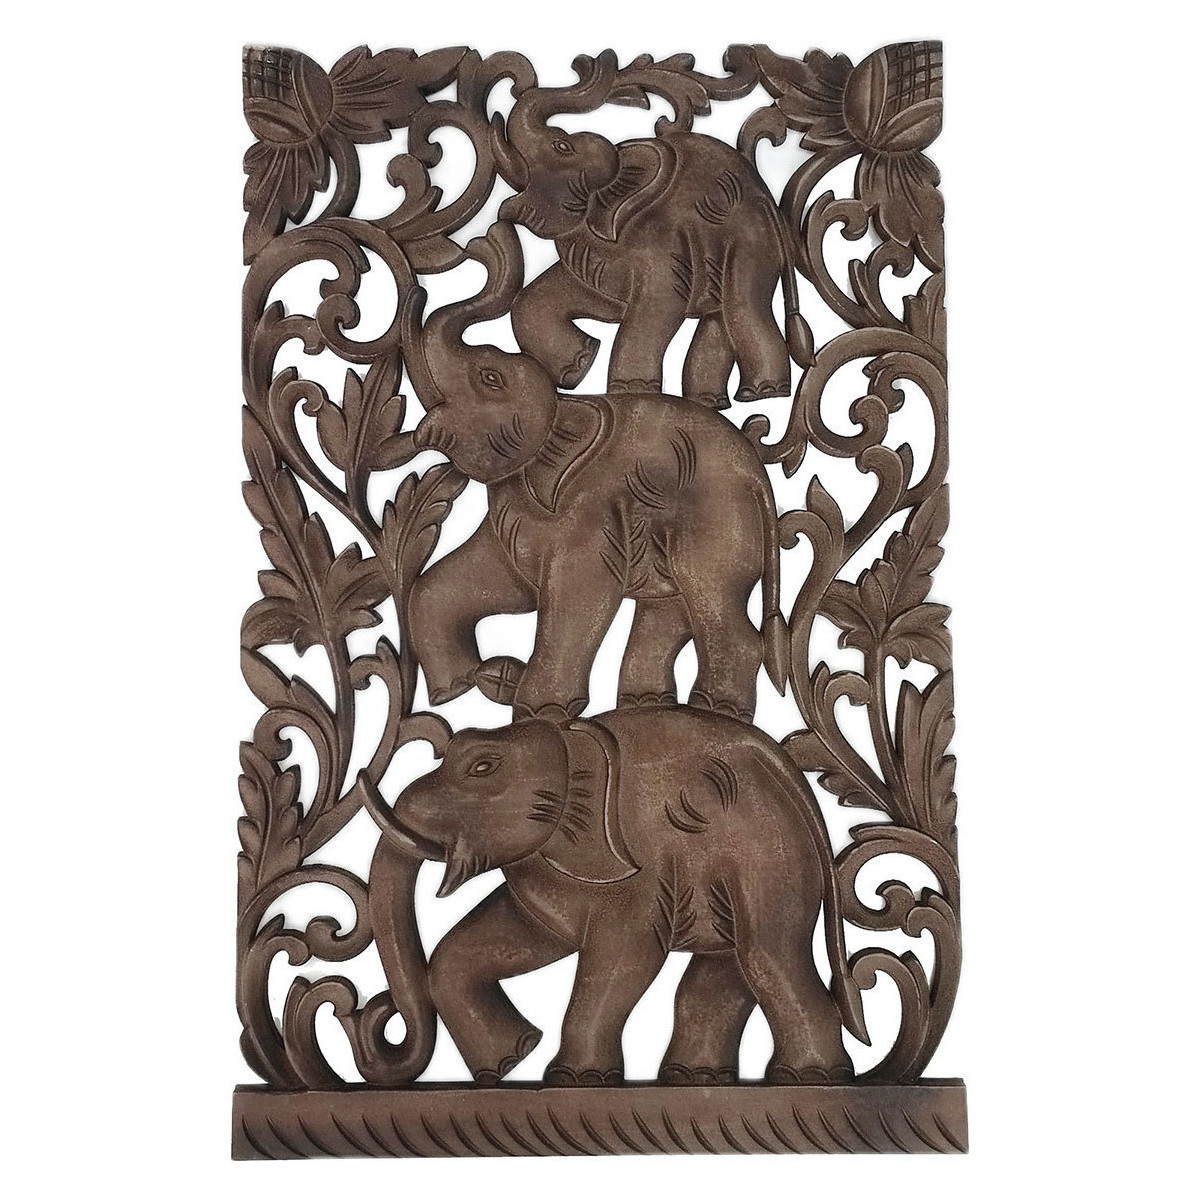 Home Statuetten und Figuren Signes Grimalt Elefantenwandverzierung Braun